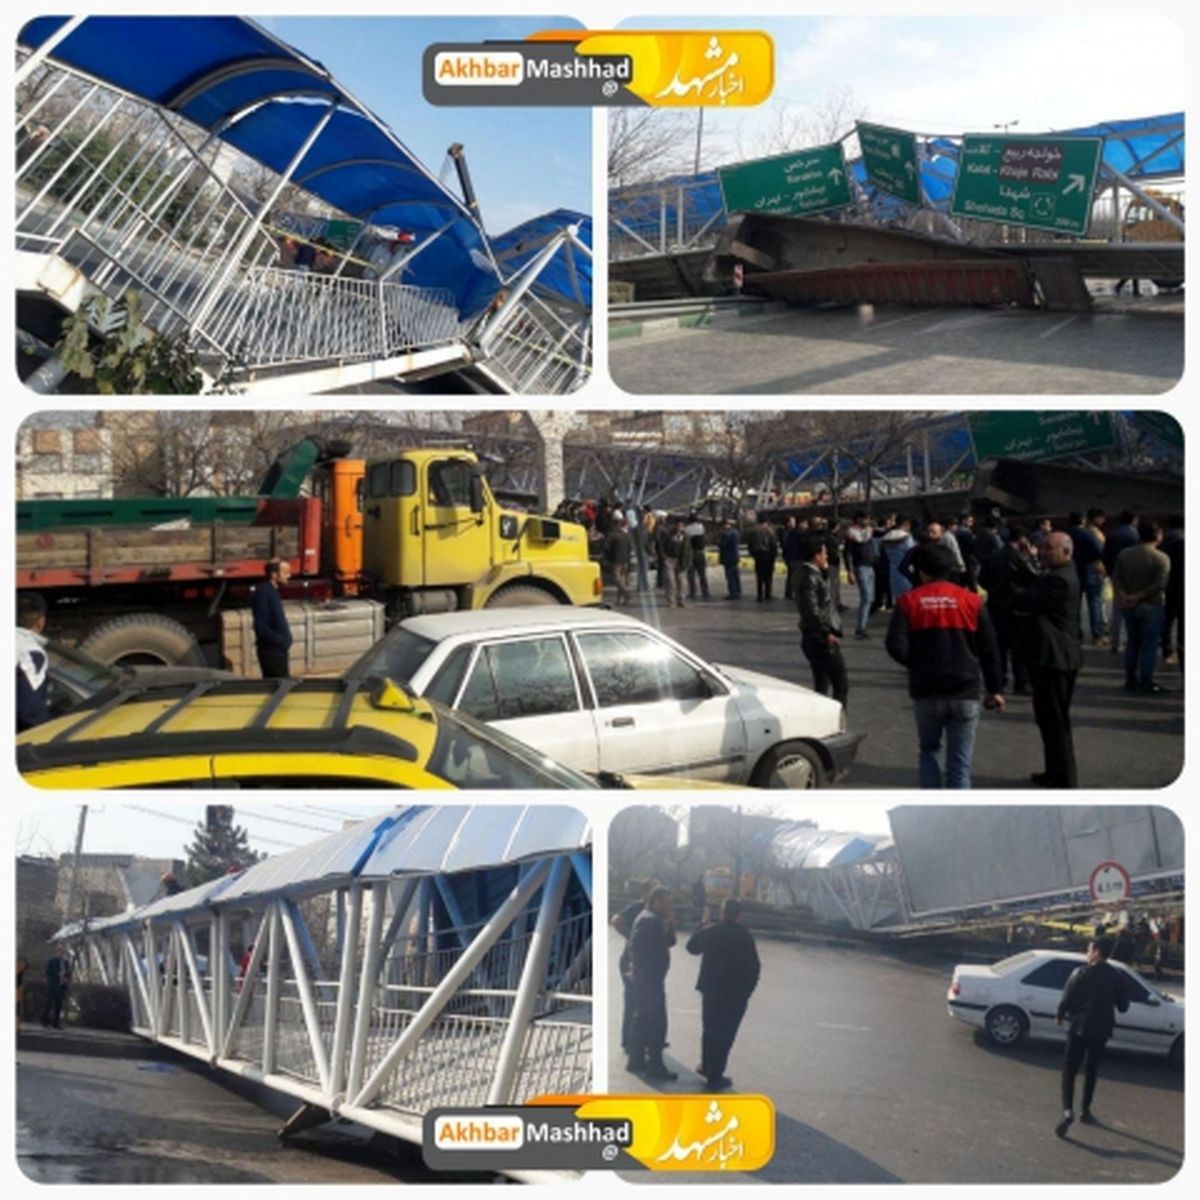 سقوط پل عابر پیاده در میدان امام حسین مشهد